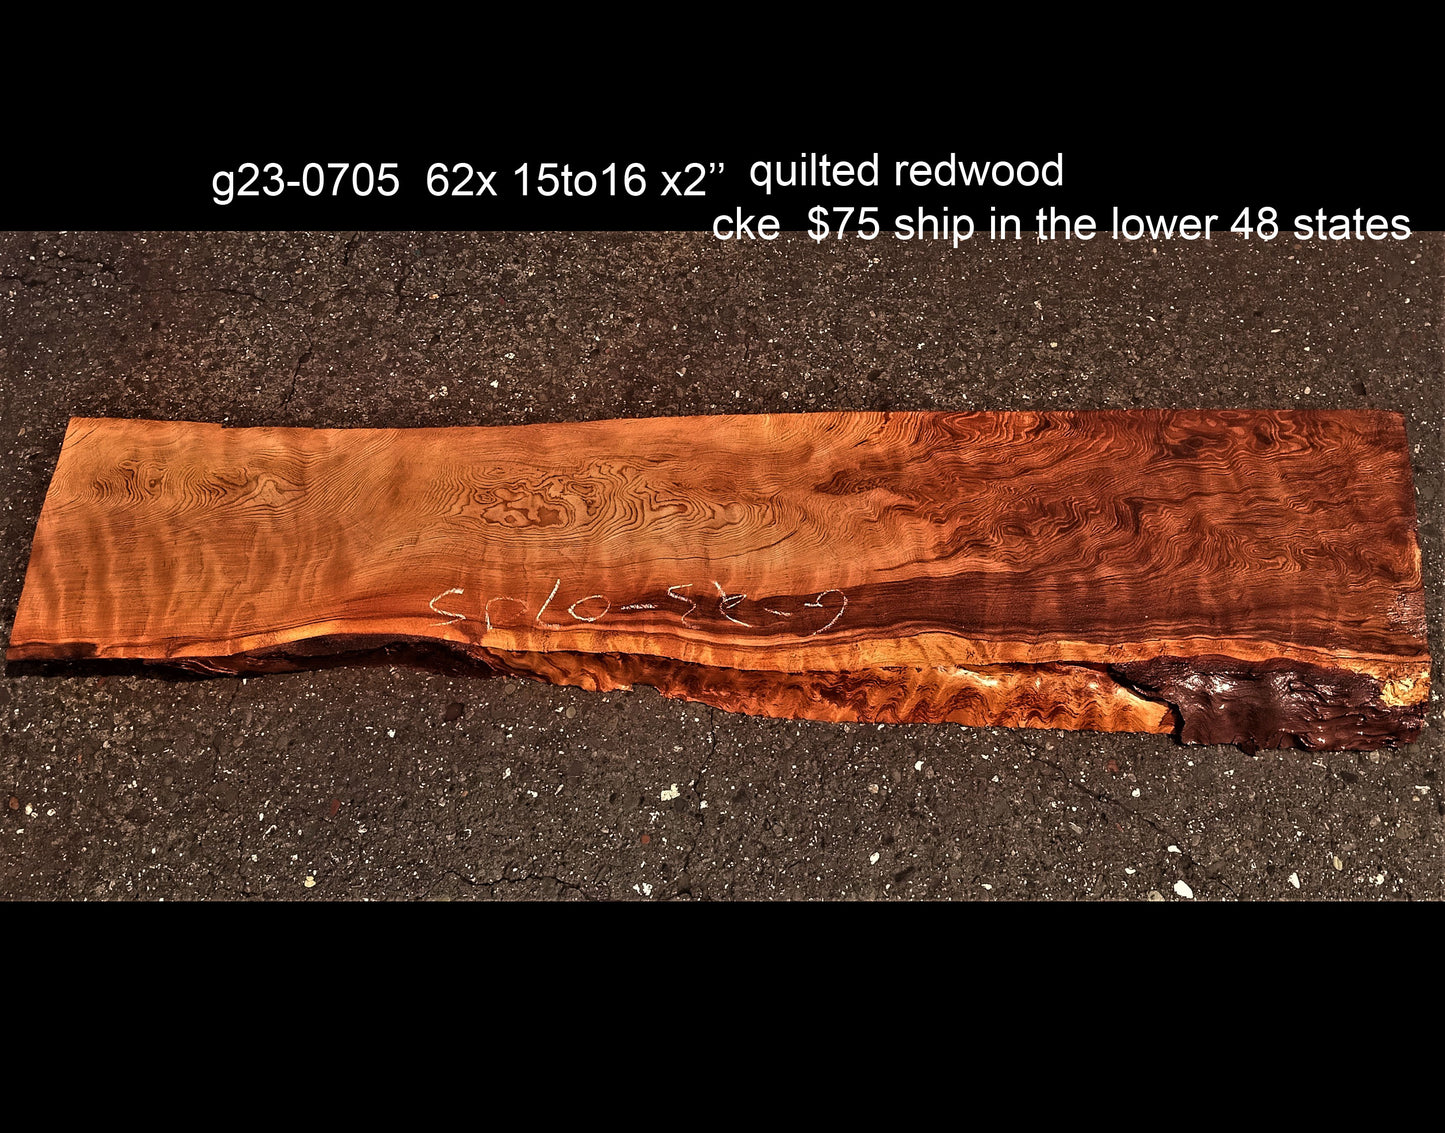 Quilted redwood | guitar billet | wood turning | DIY crafts | g23-0705